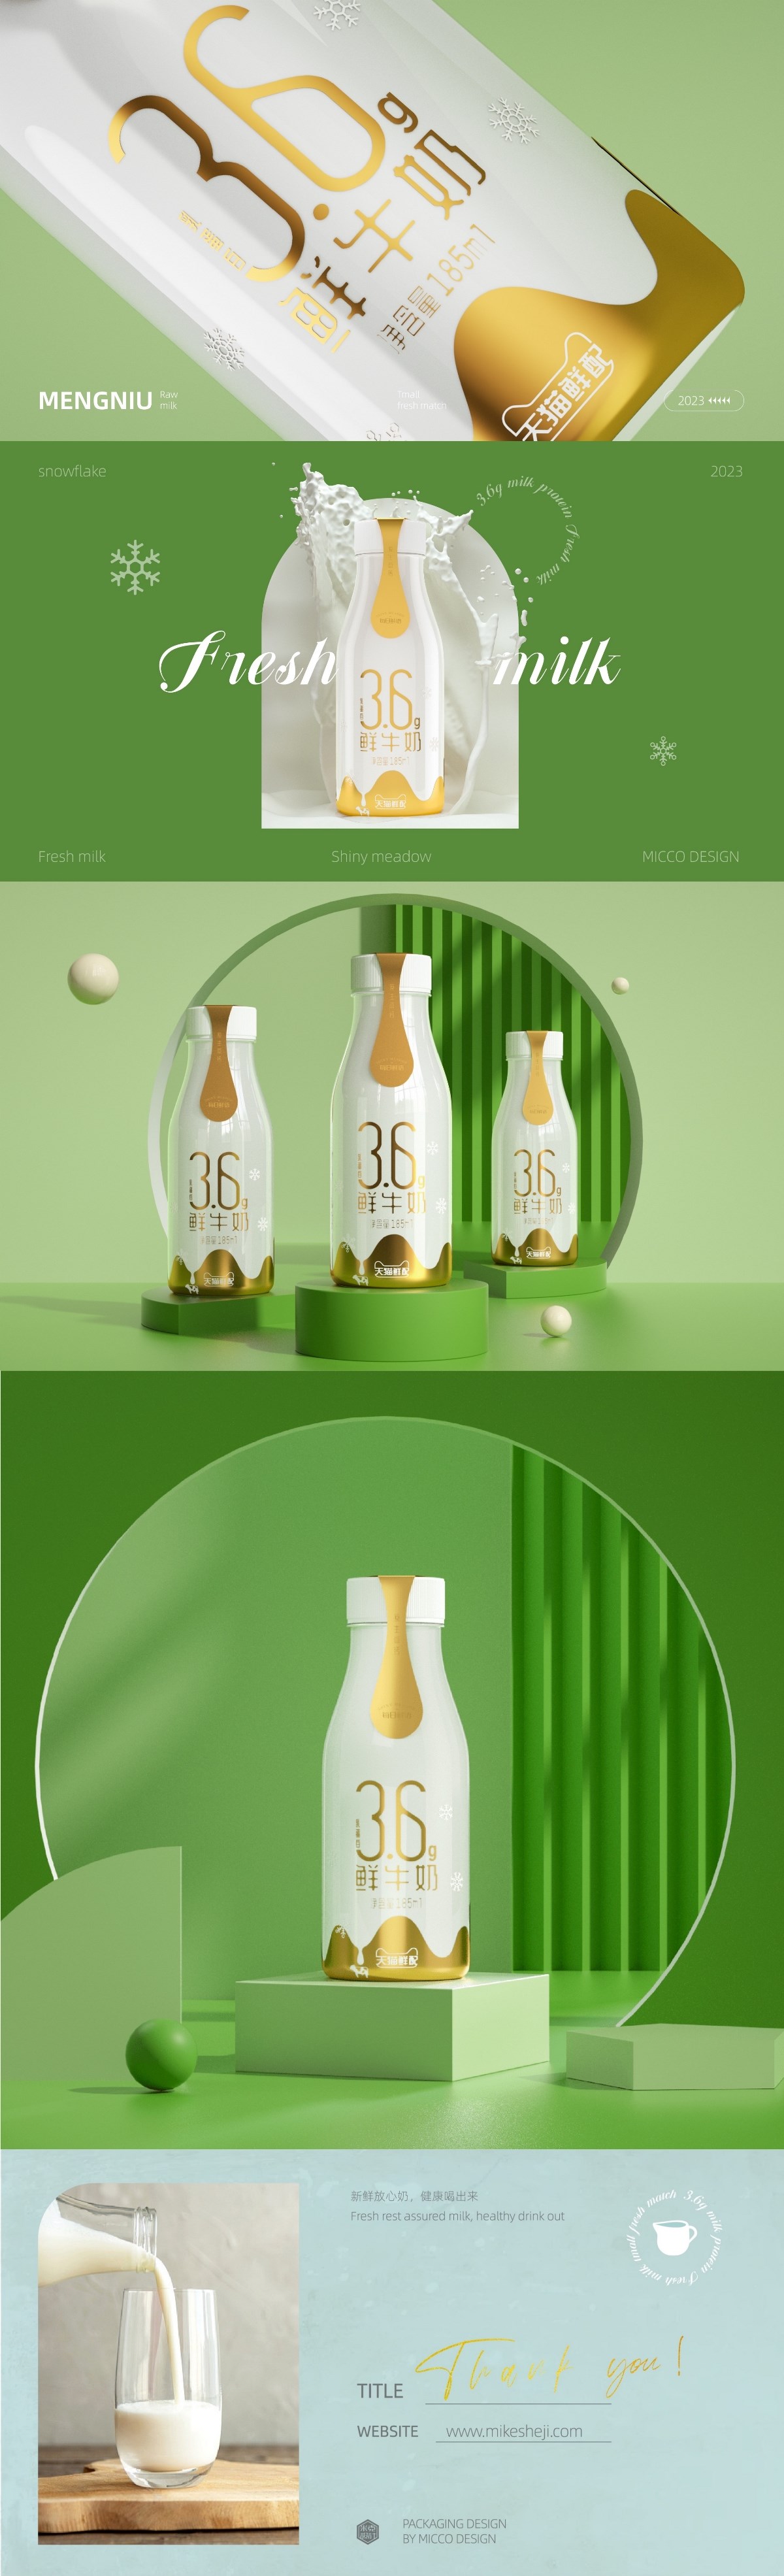 蒙牛×天猫鲜配丨3.6g乳蛋白鲜牛奶包装设计-瓶型设计